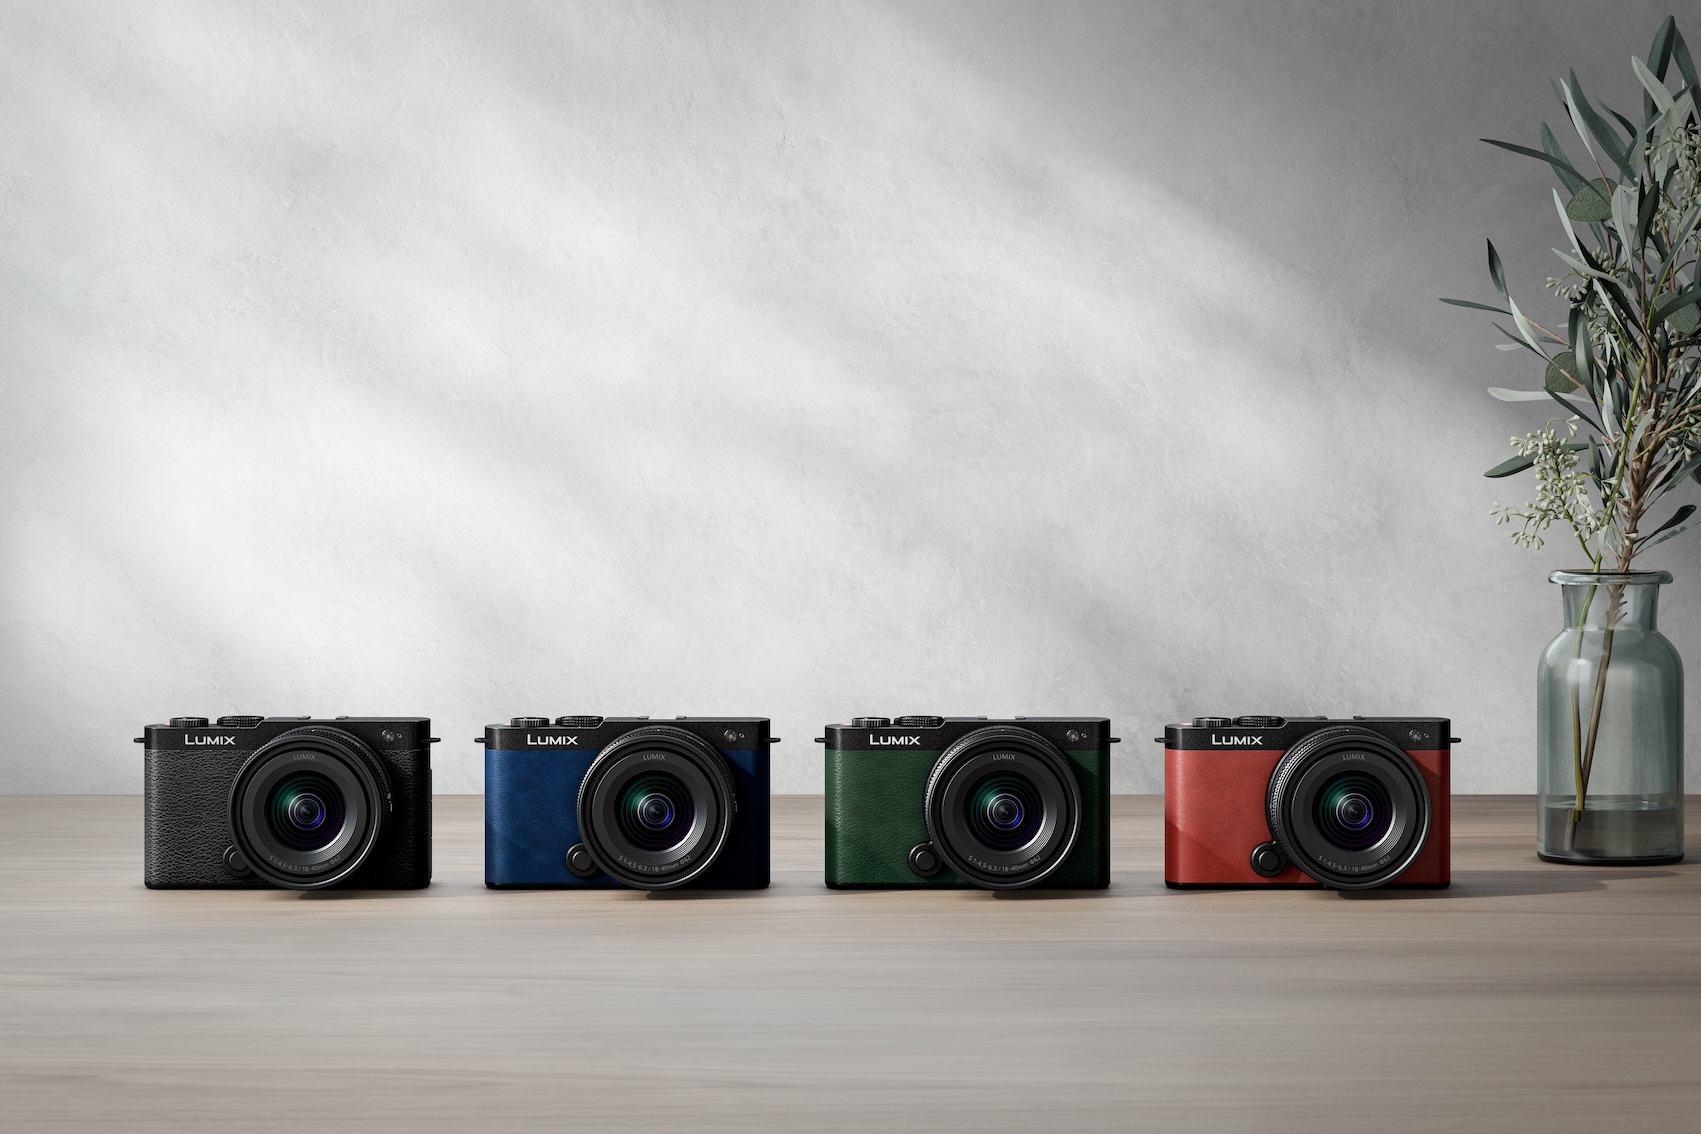 Die LUMIX S9 ist die kleinste und leichteste Vollformat Systemkamera der LUMIX S-Serie. Sie ist in den vier Farben Jet Black, Crimson Red, Dark Olive, Night Blu erhältlich. (c) Panasonic